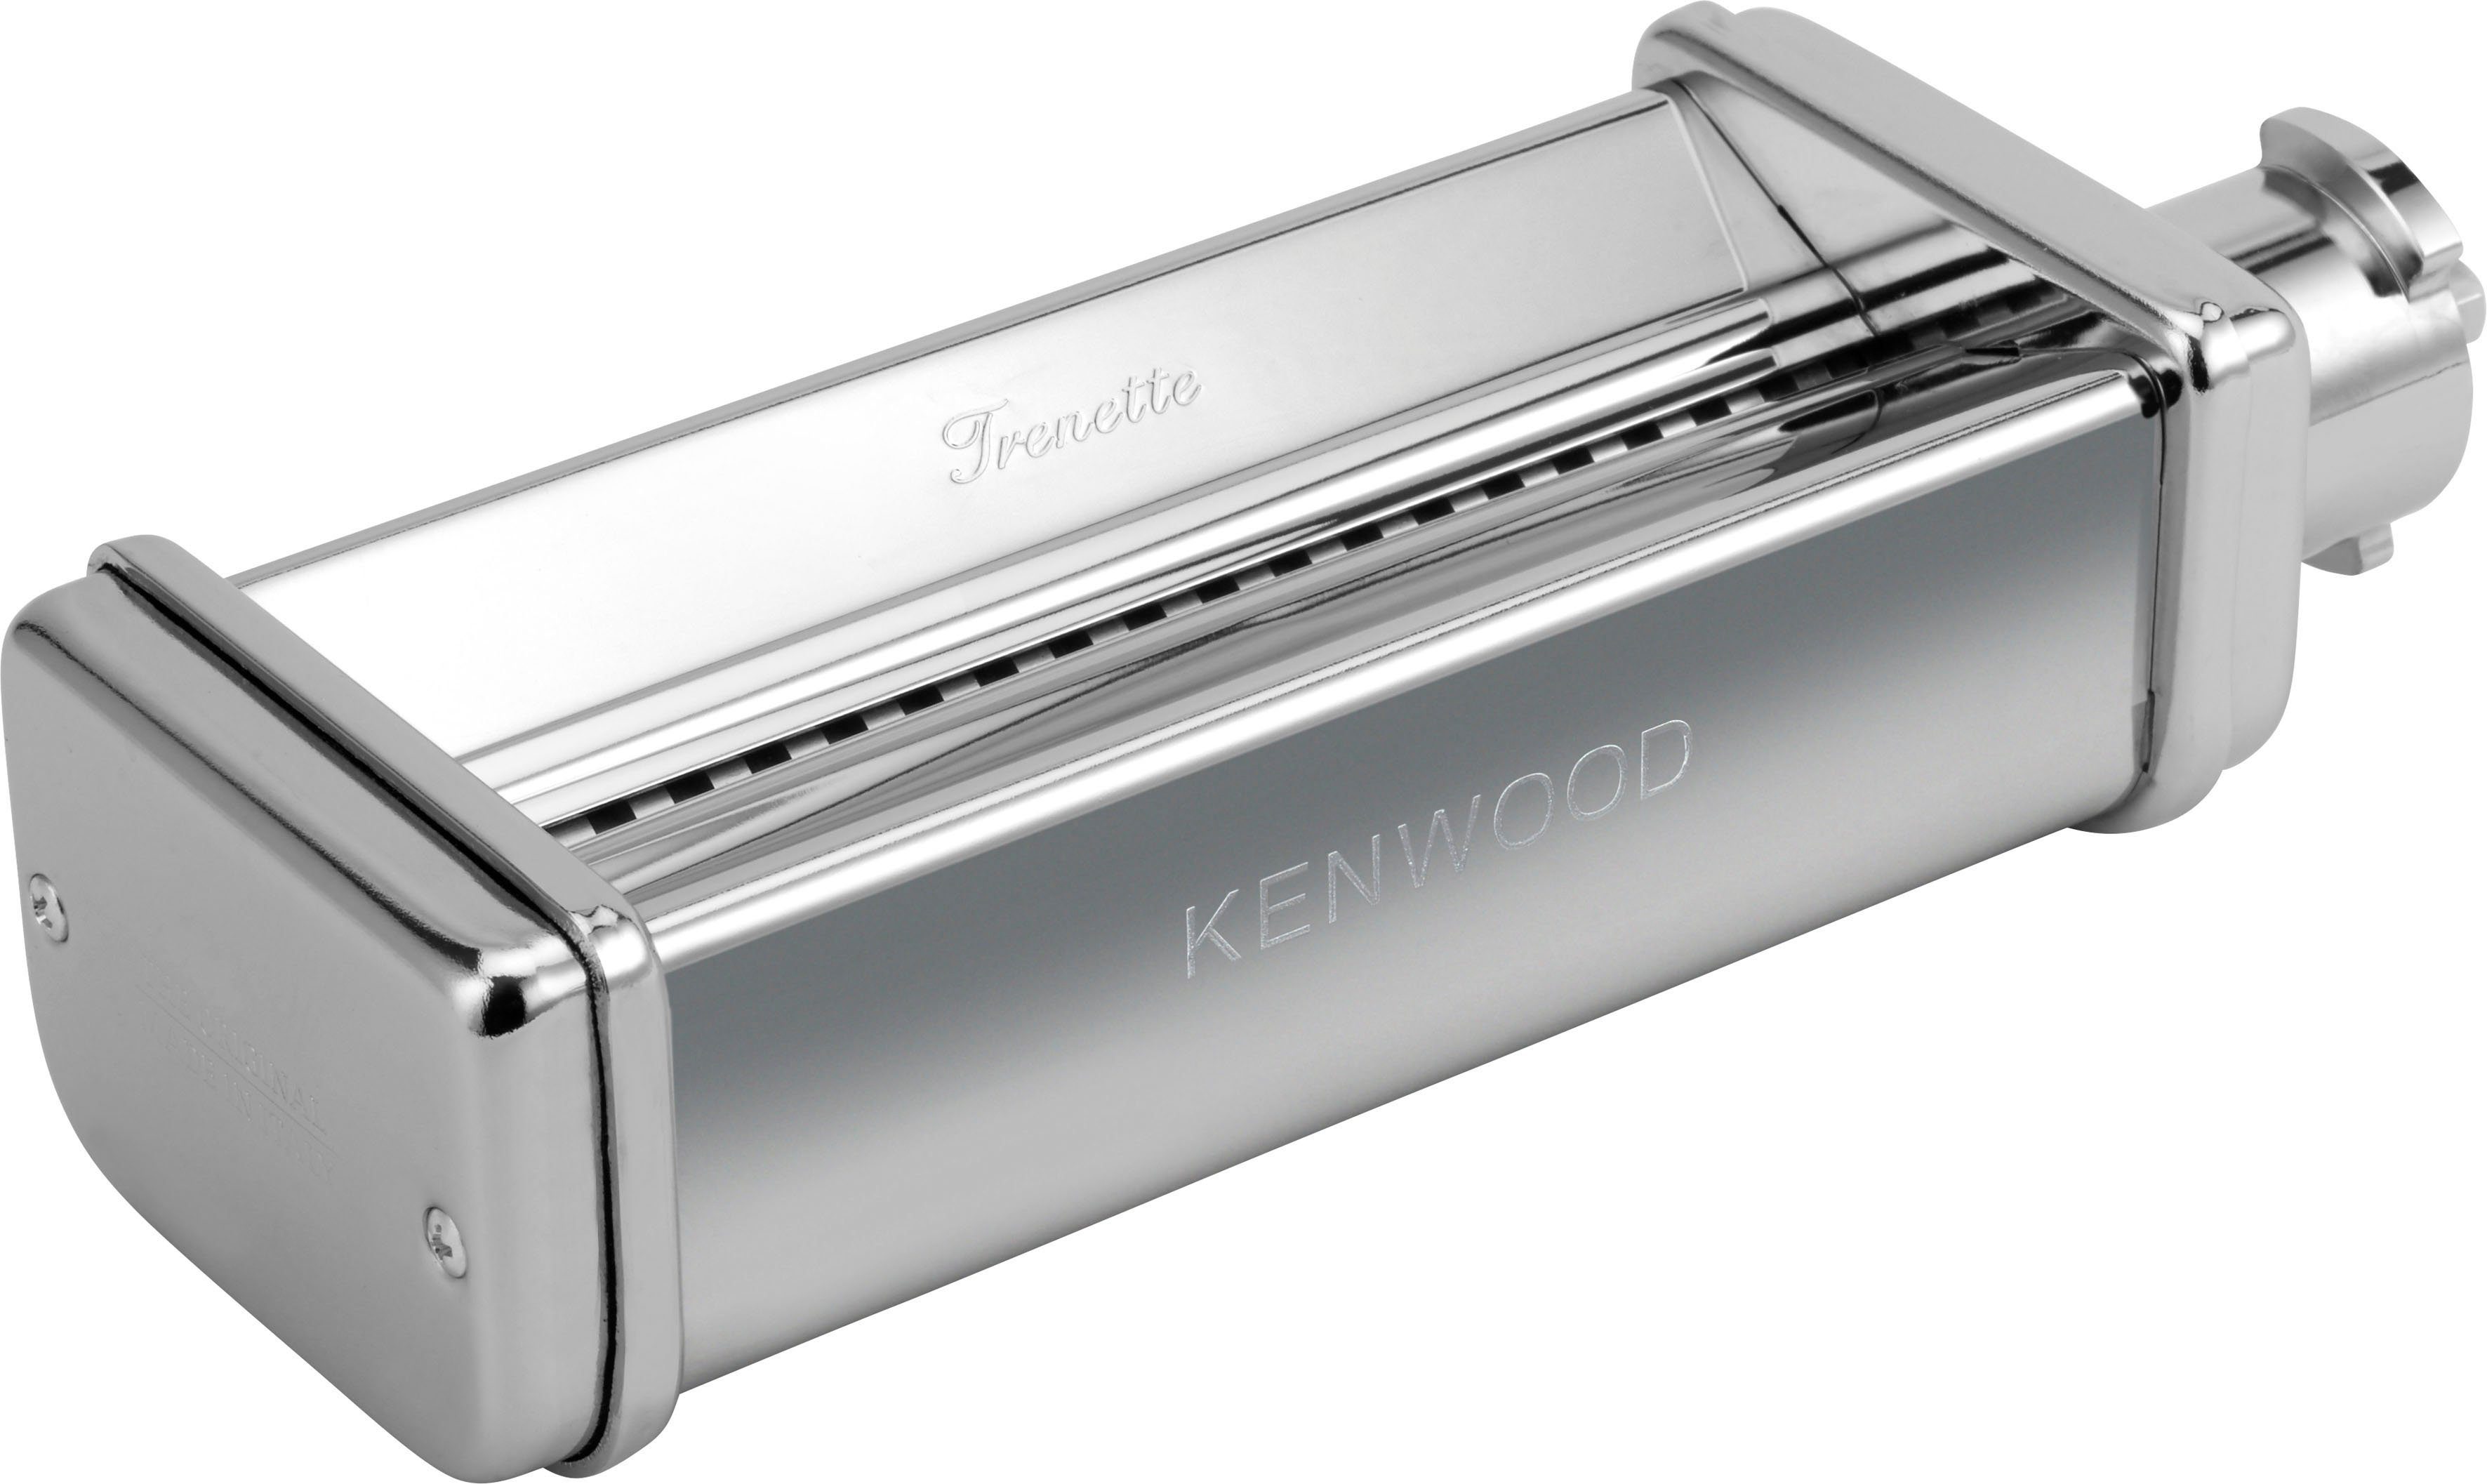 Kenwood pastawals trenette snij-inzet KAX983ME voor Kenwood-keukenmachines